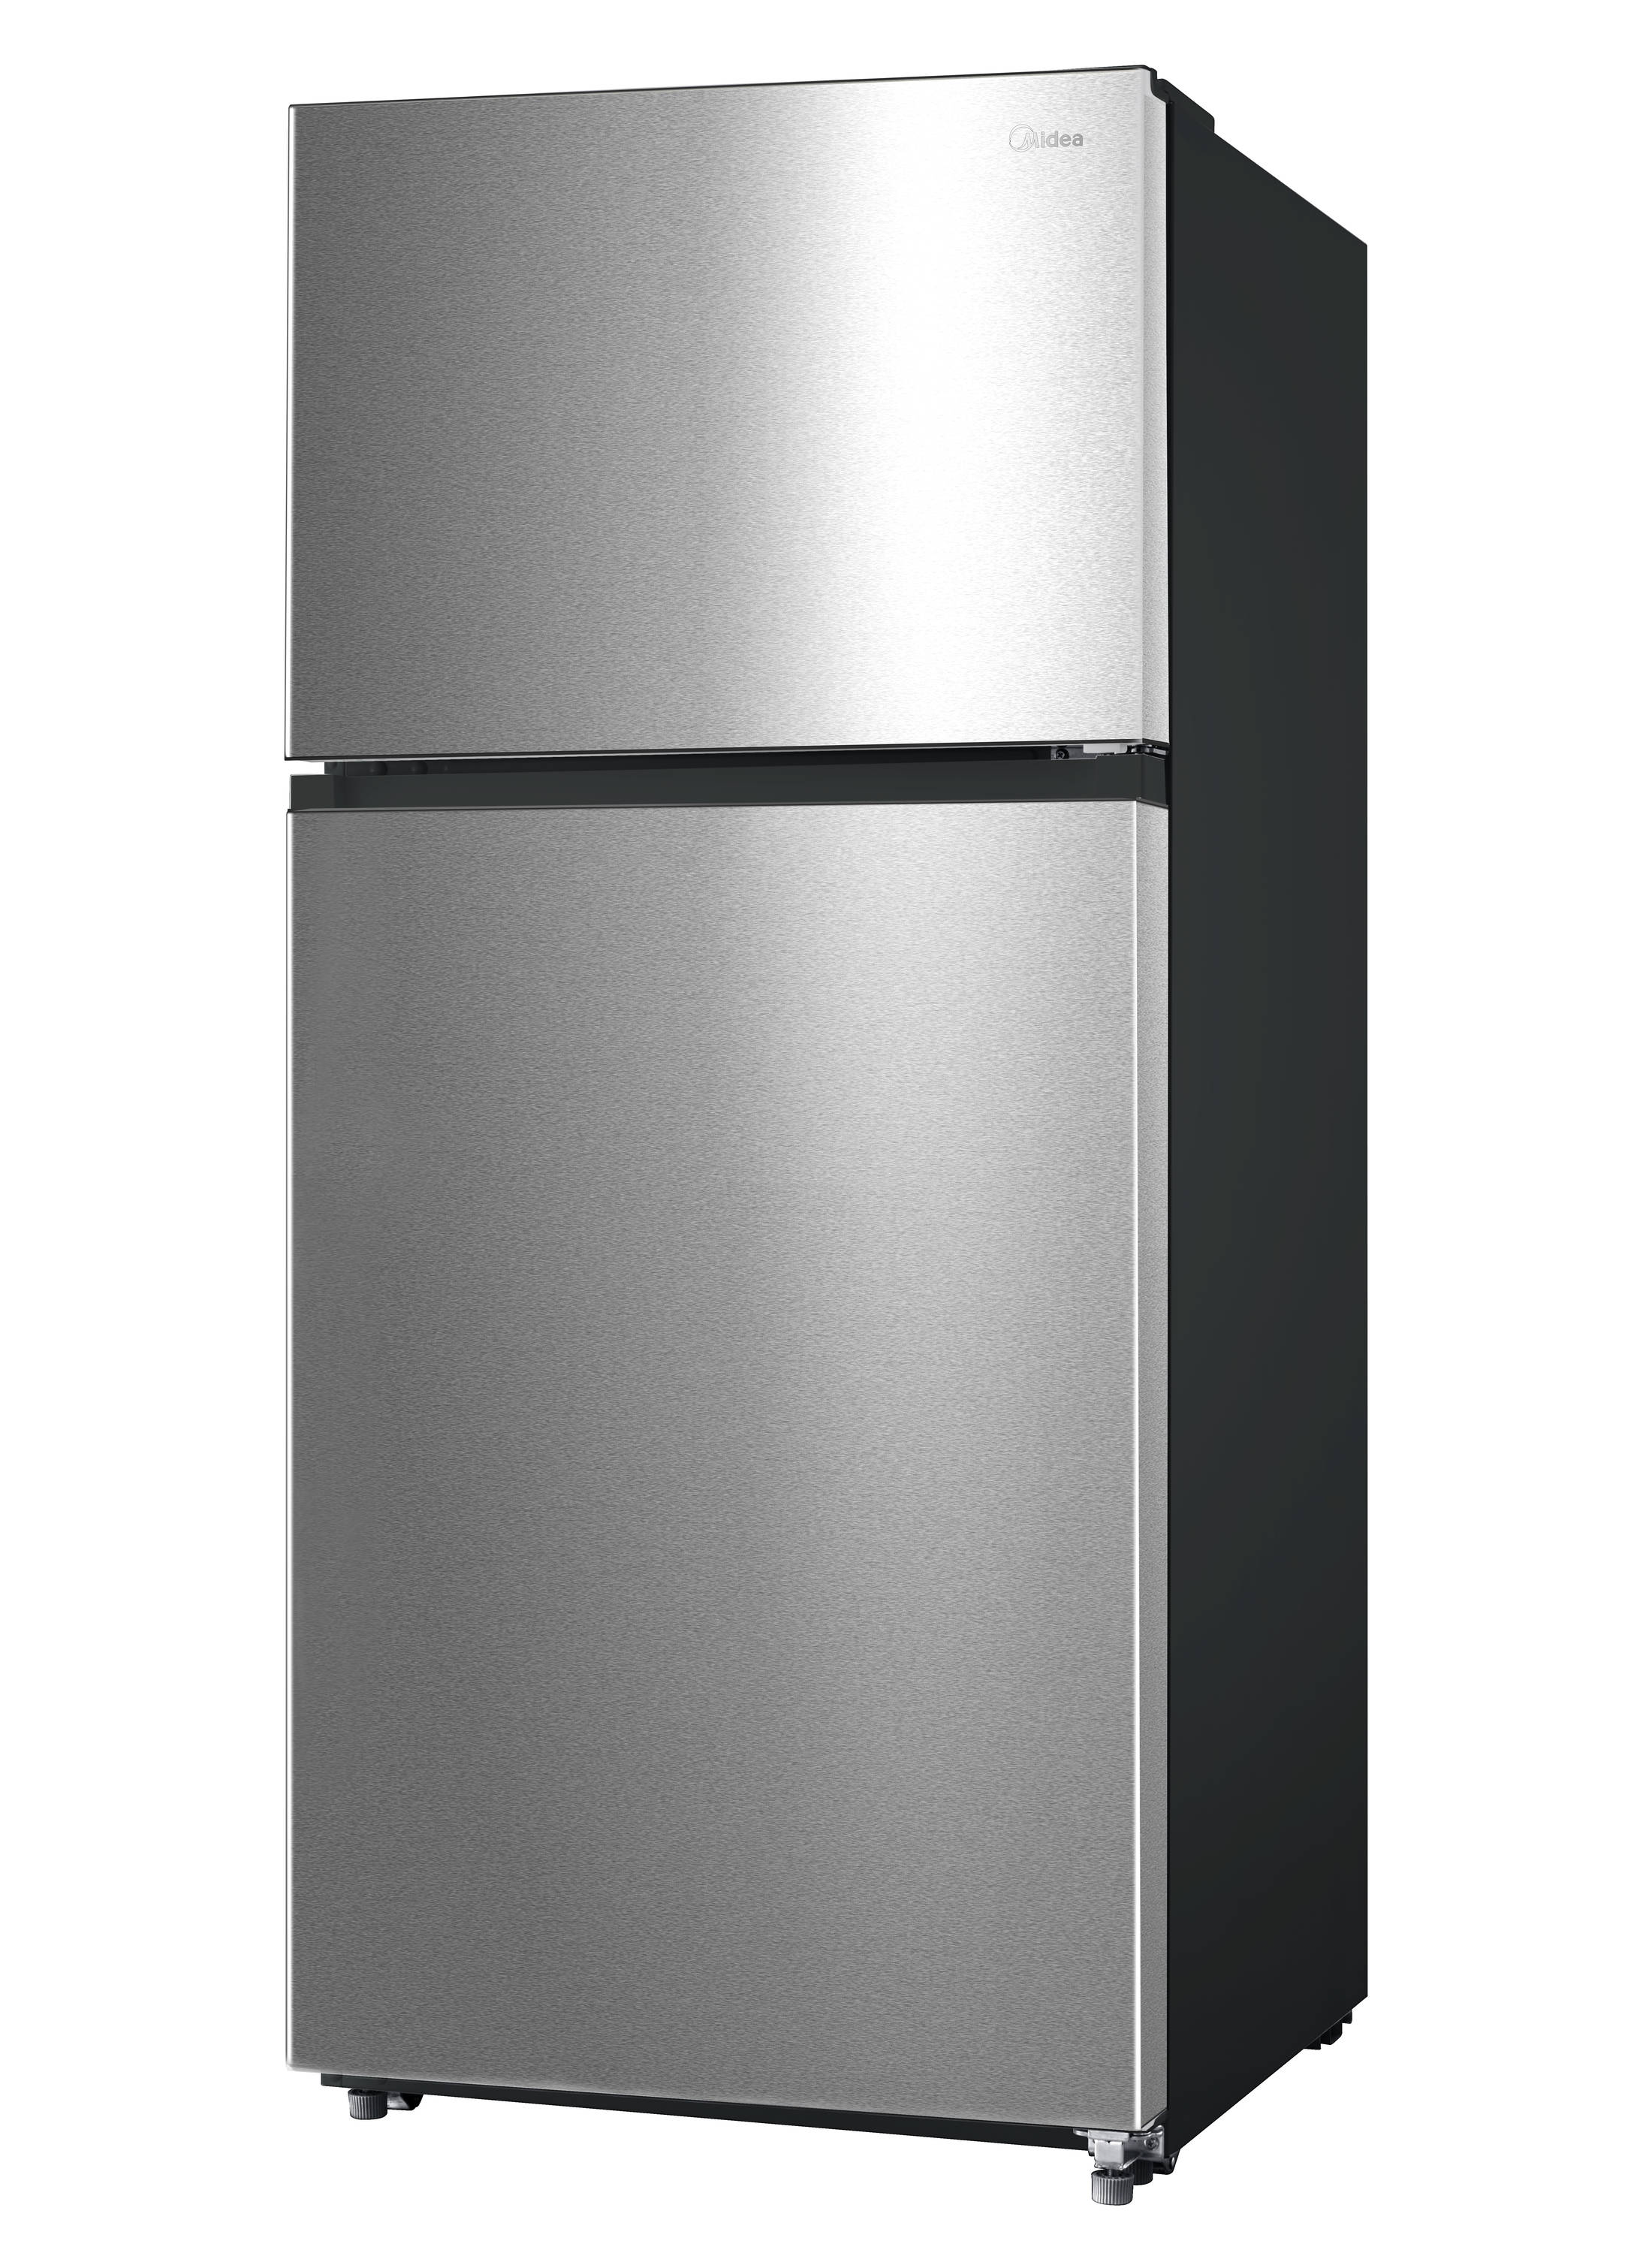 Réfrigérateur Midea de 18 pi3 à congélateur supérieur - MRT18S4AWW